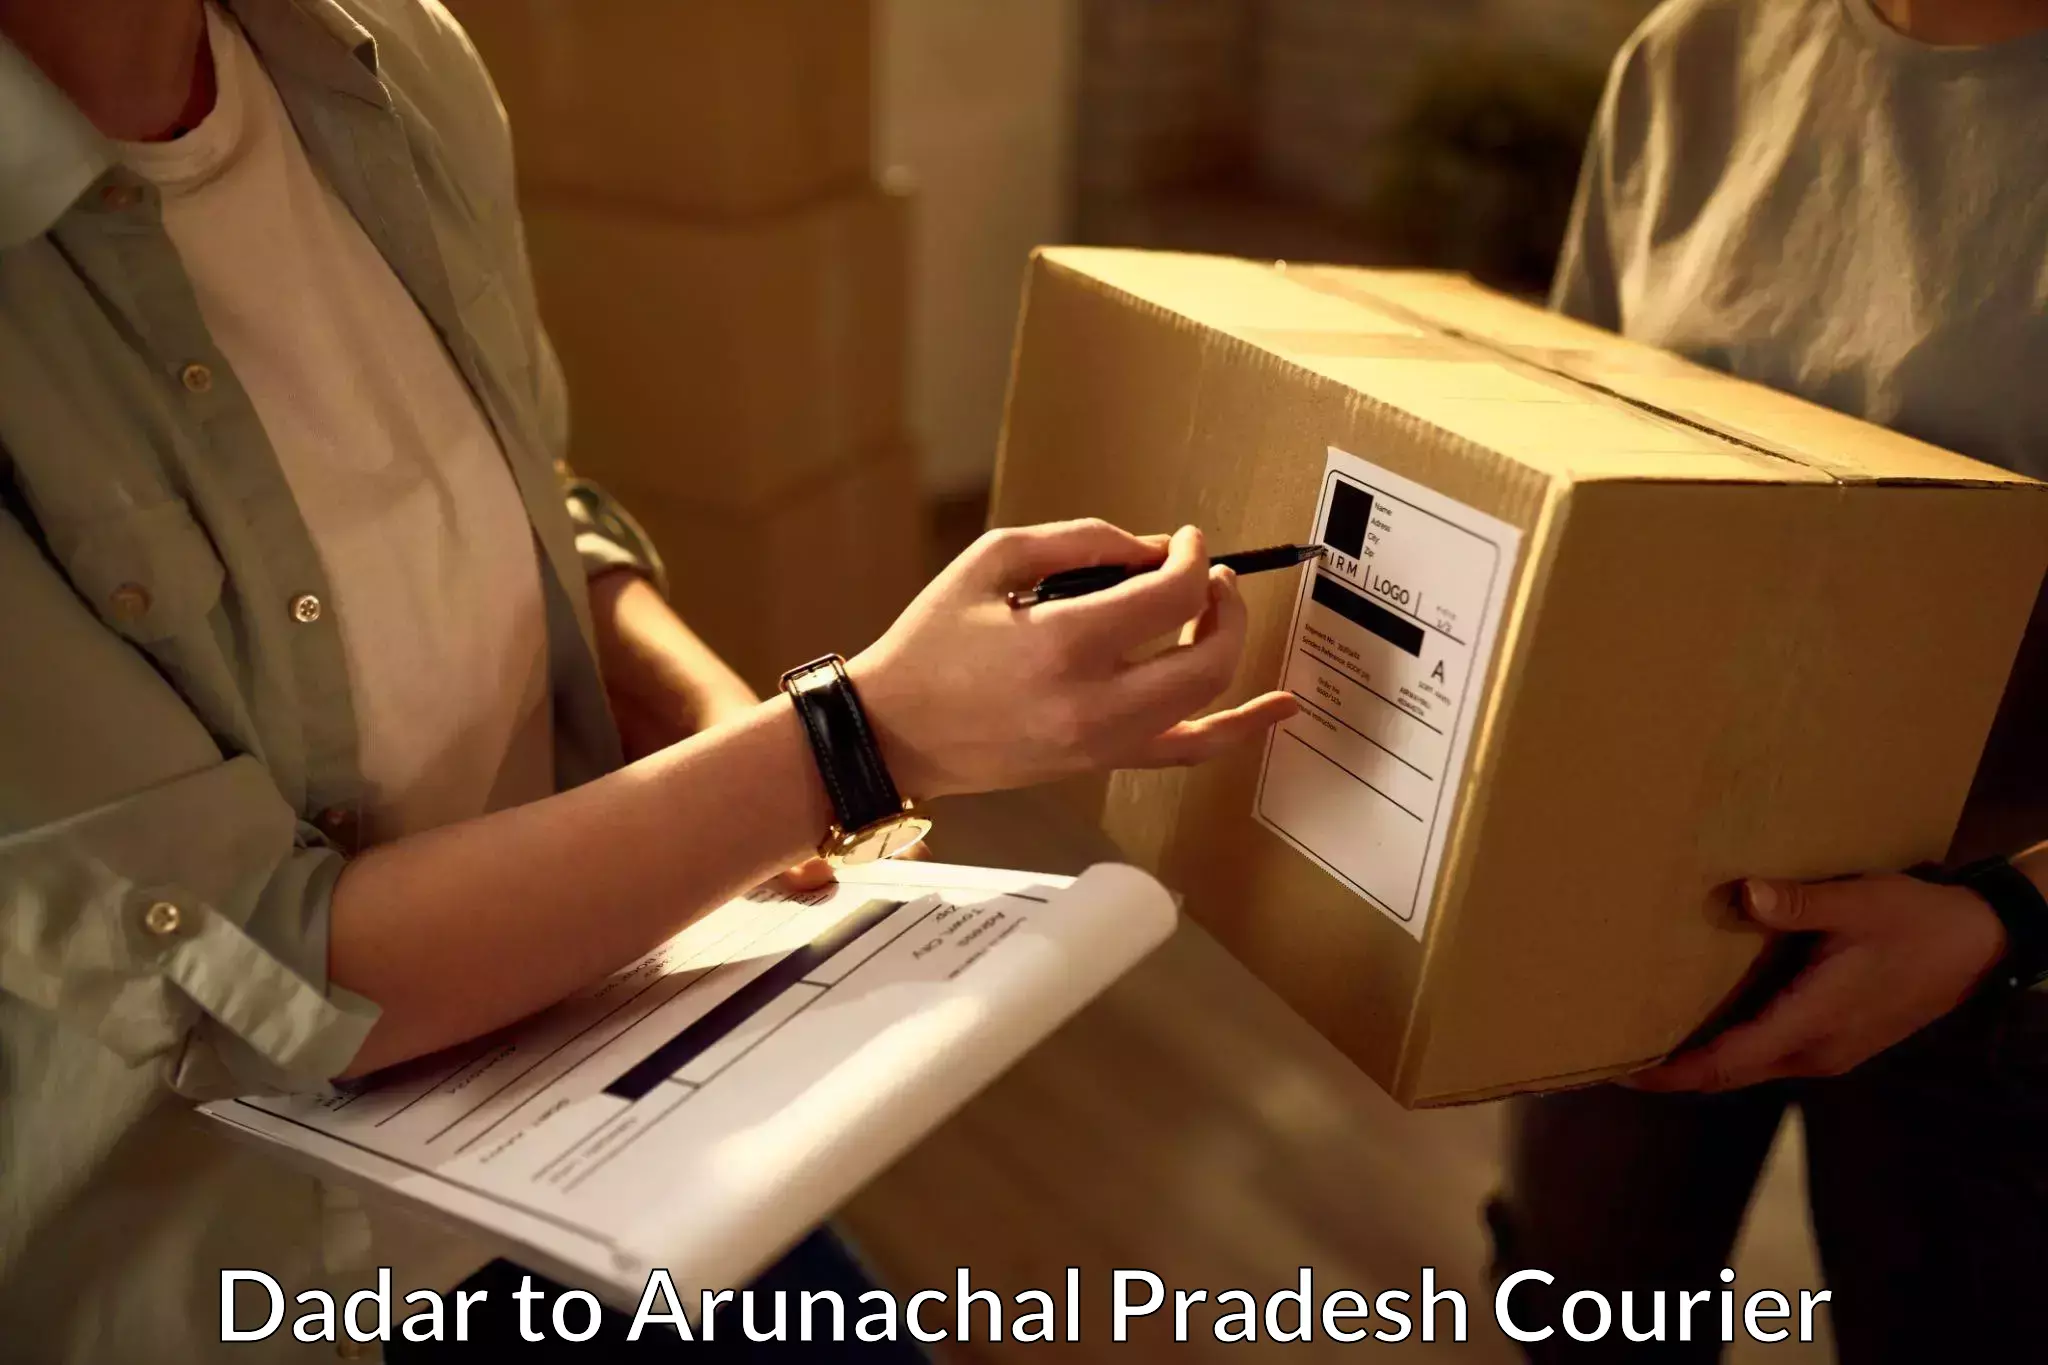 On-call courier service in Dadar to Arunachal Pradesh